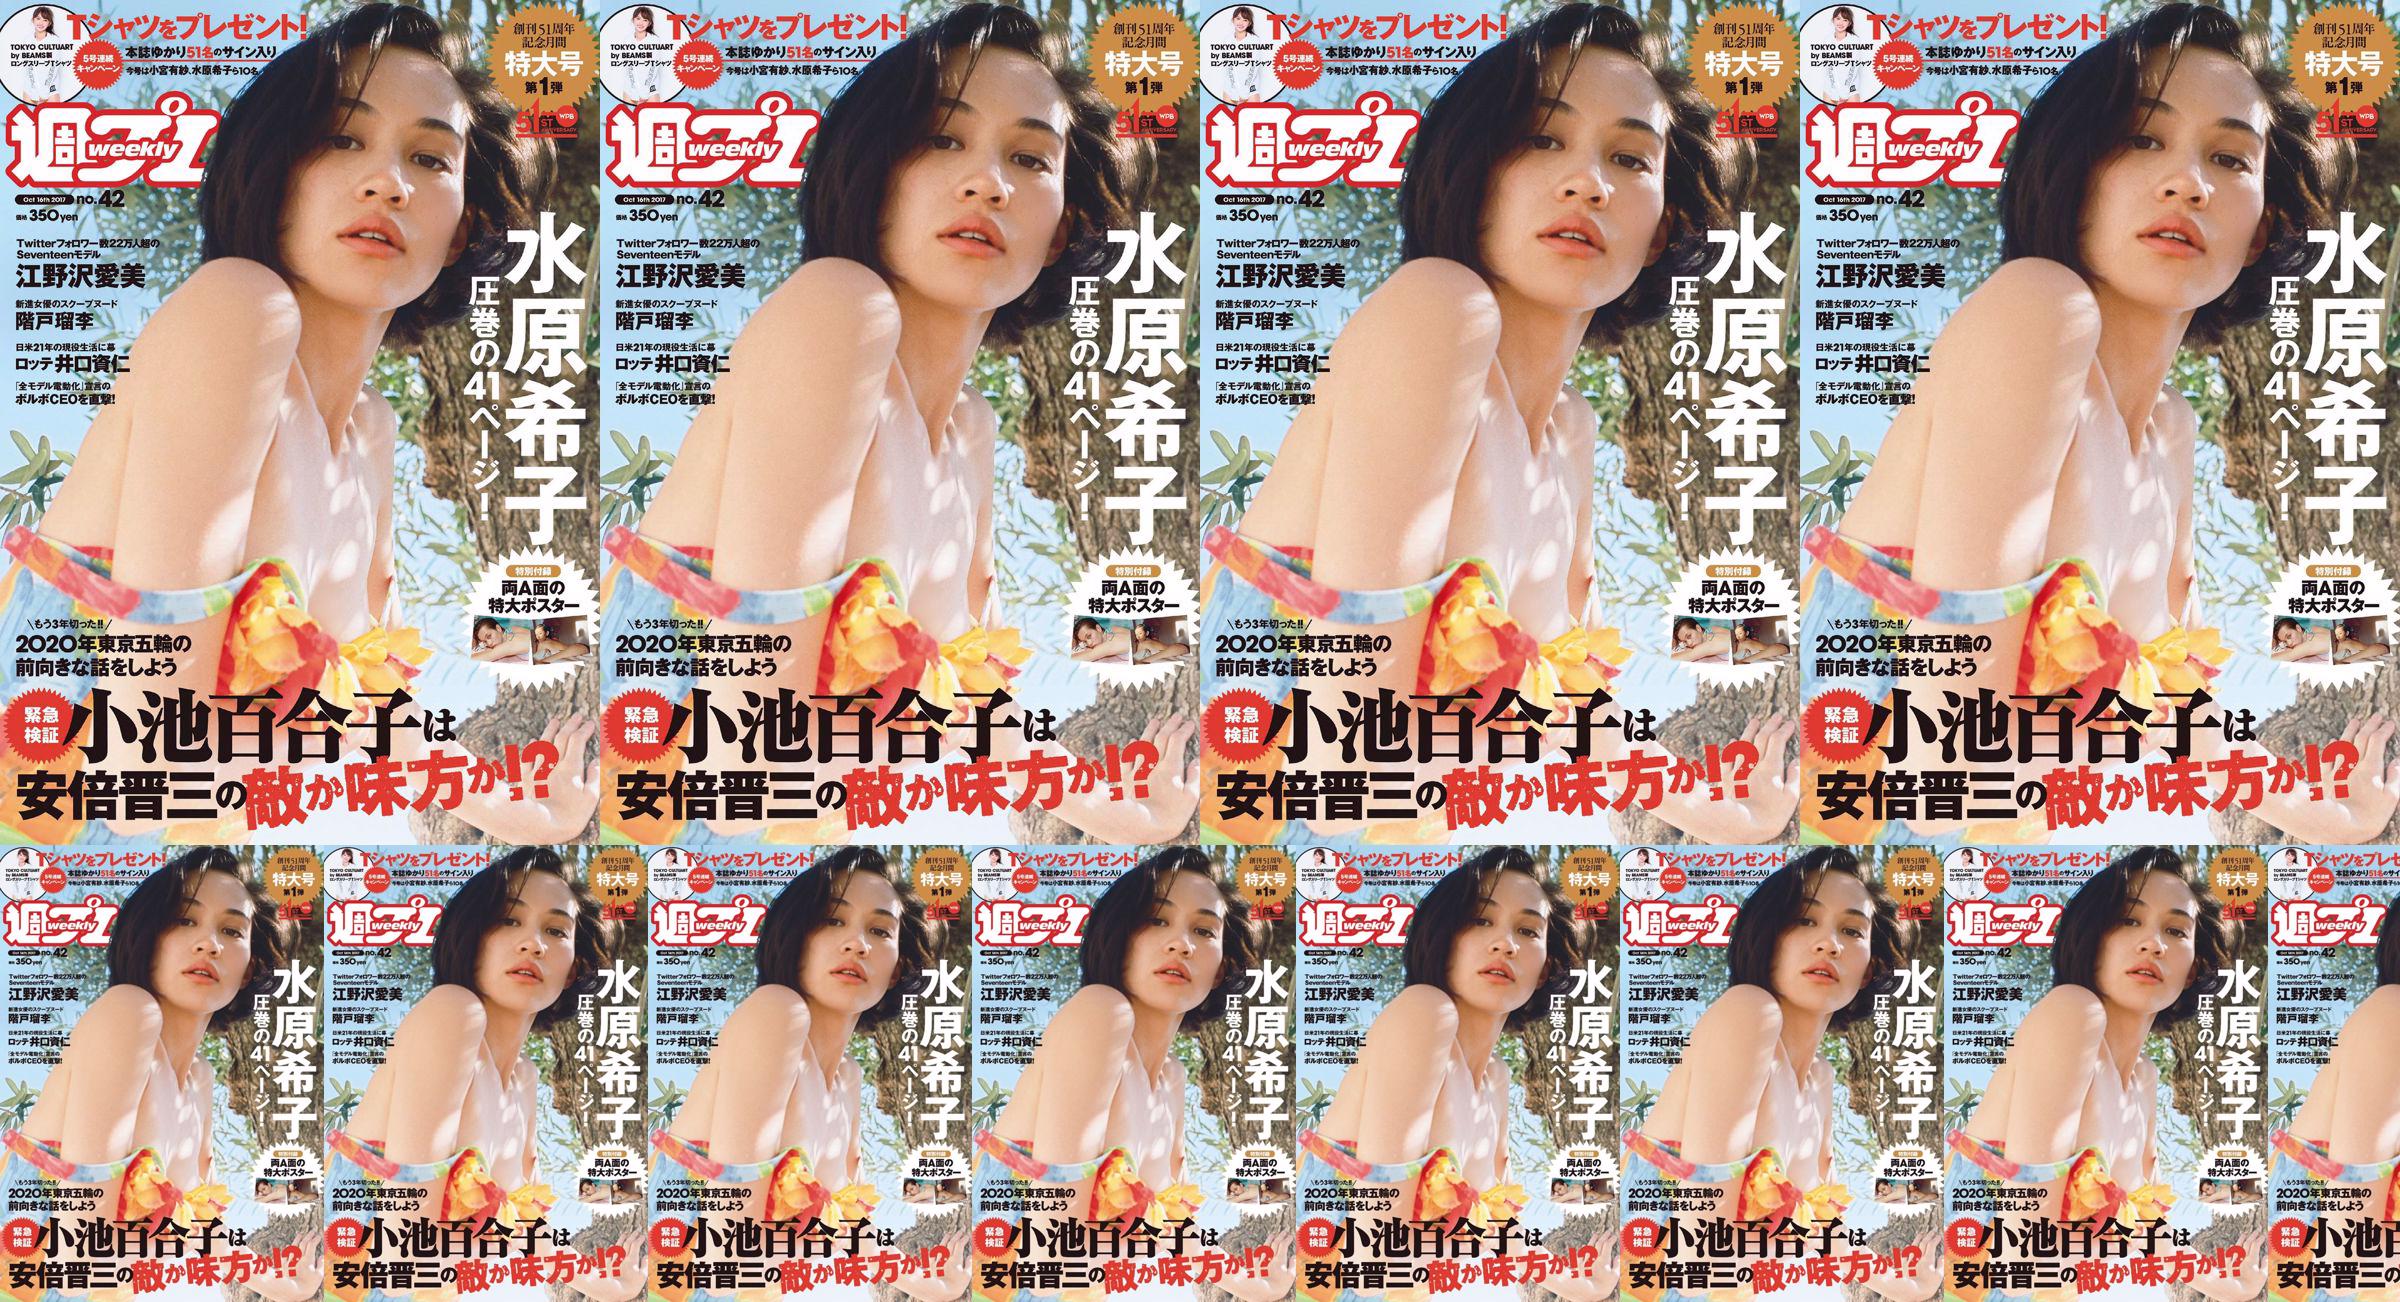 Kiko Mizuhara Manami Enosawa Serina Fukui Miu Nakamura Ruri Shinato [Weekly Playboy] 2017 Majalah Foto No.42 No.647ce4 Halaman 1